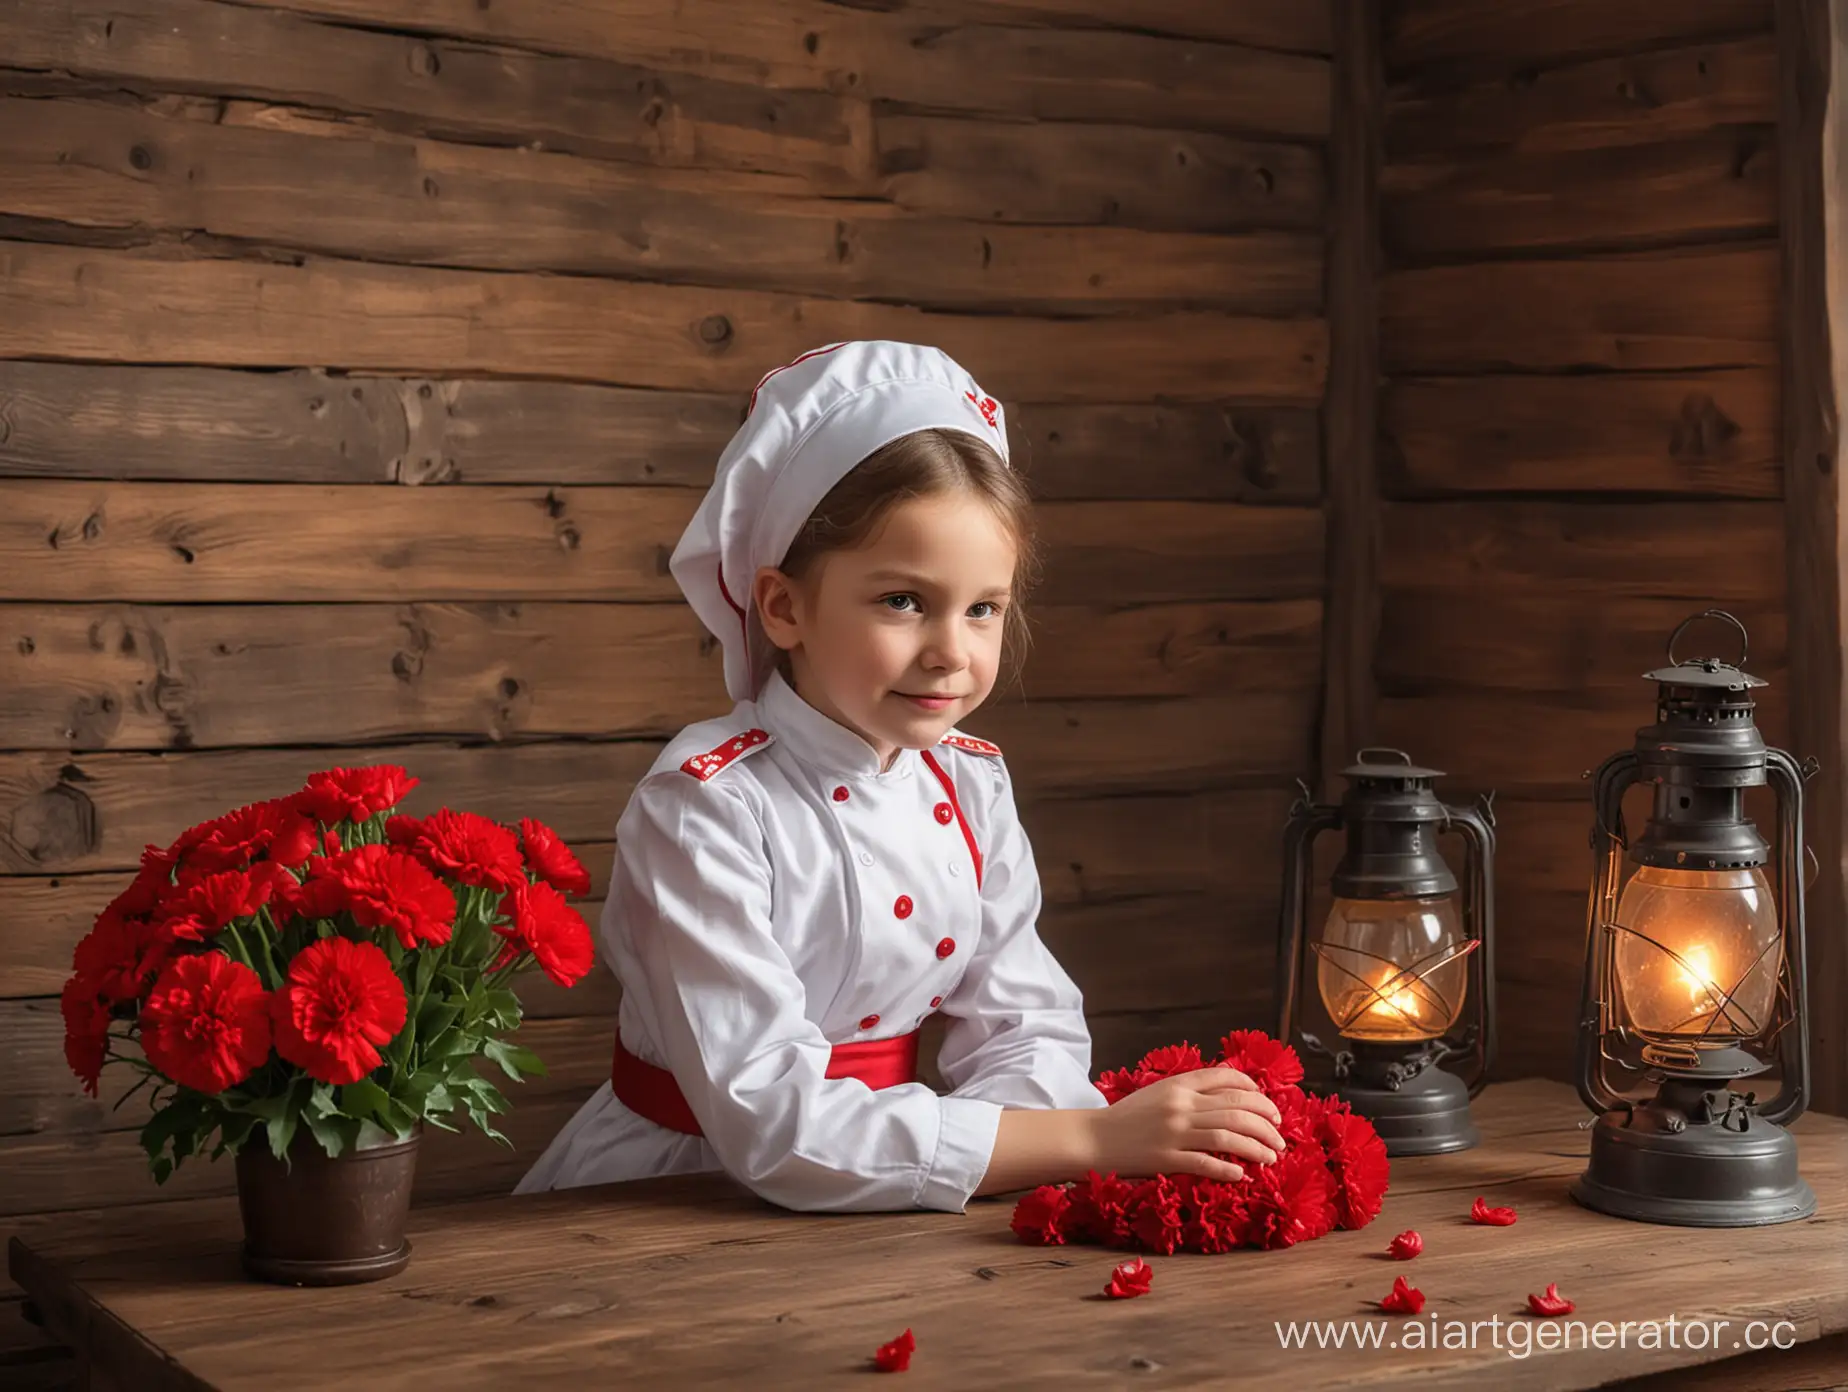 Маленькая девочка в одежде медсестры СССР сидит на столе, на фоне деревянная стена и горит фонарь, на столе в вазе букет красной гвоздики, очень реалистично